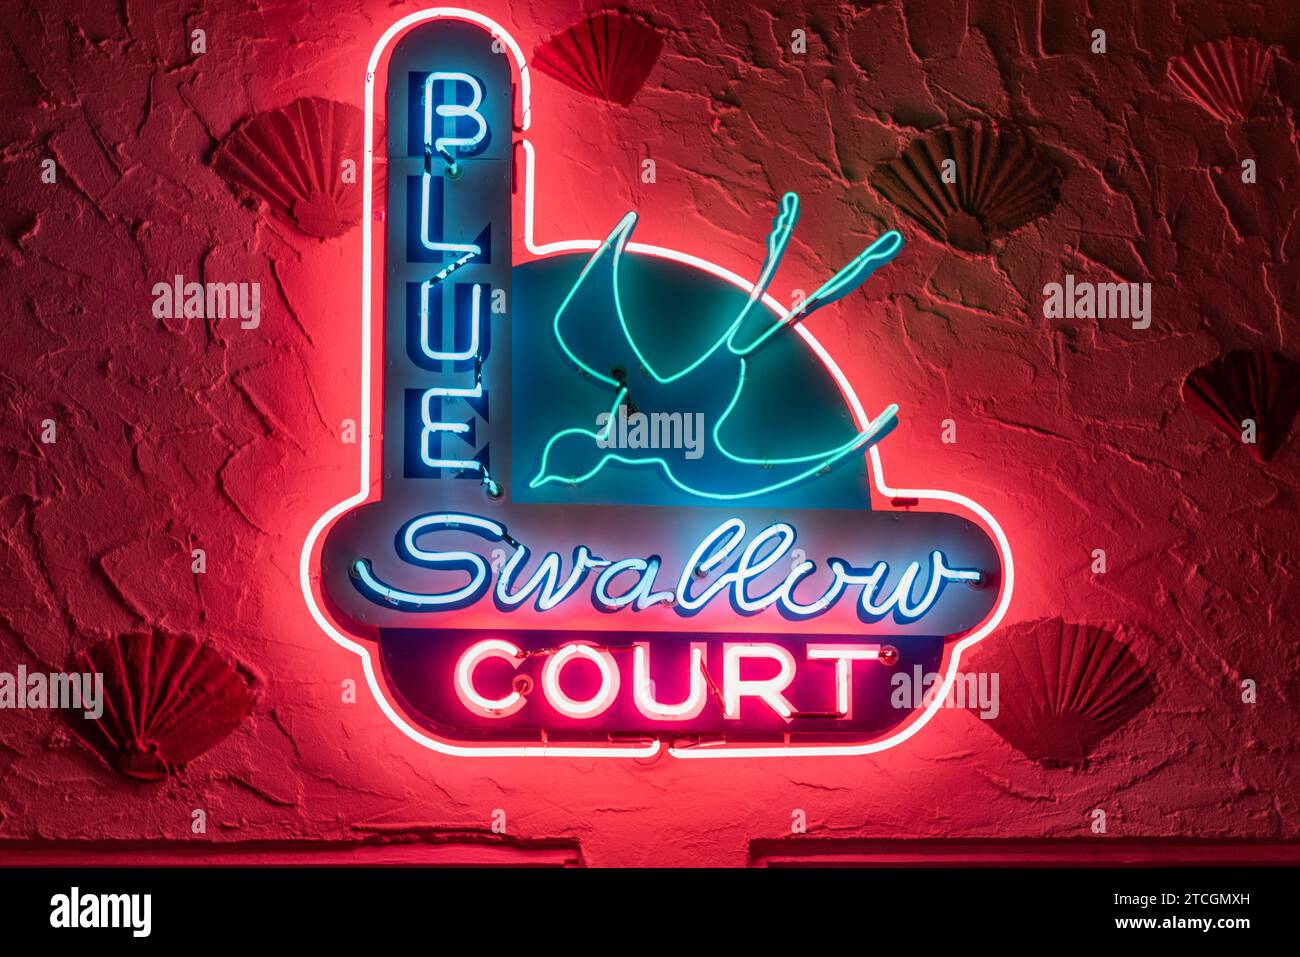 Le panneau néon au Blue Swallow Motel indique Blue Swallow court, le nom original quand le motel a ouvert en 1940 sur la route 66, Tucumcari, Nouveau-Mexique, États-Unis. Banque D'Images